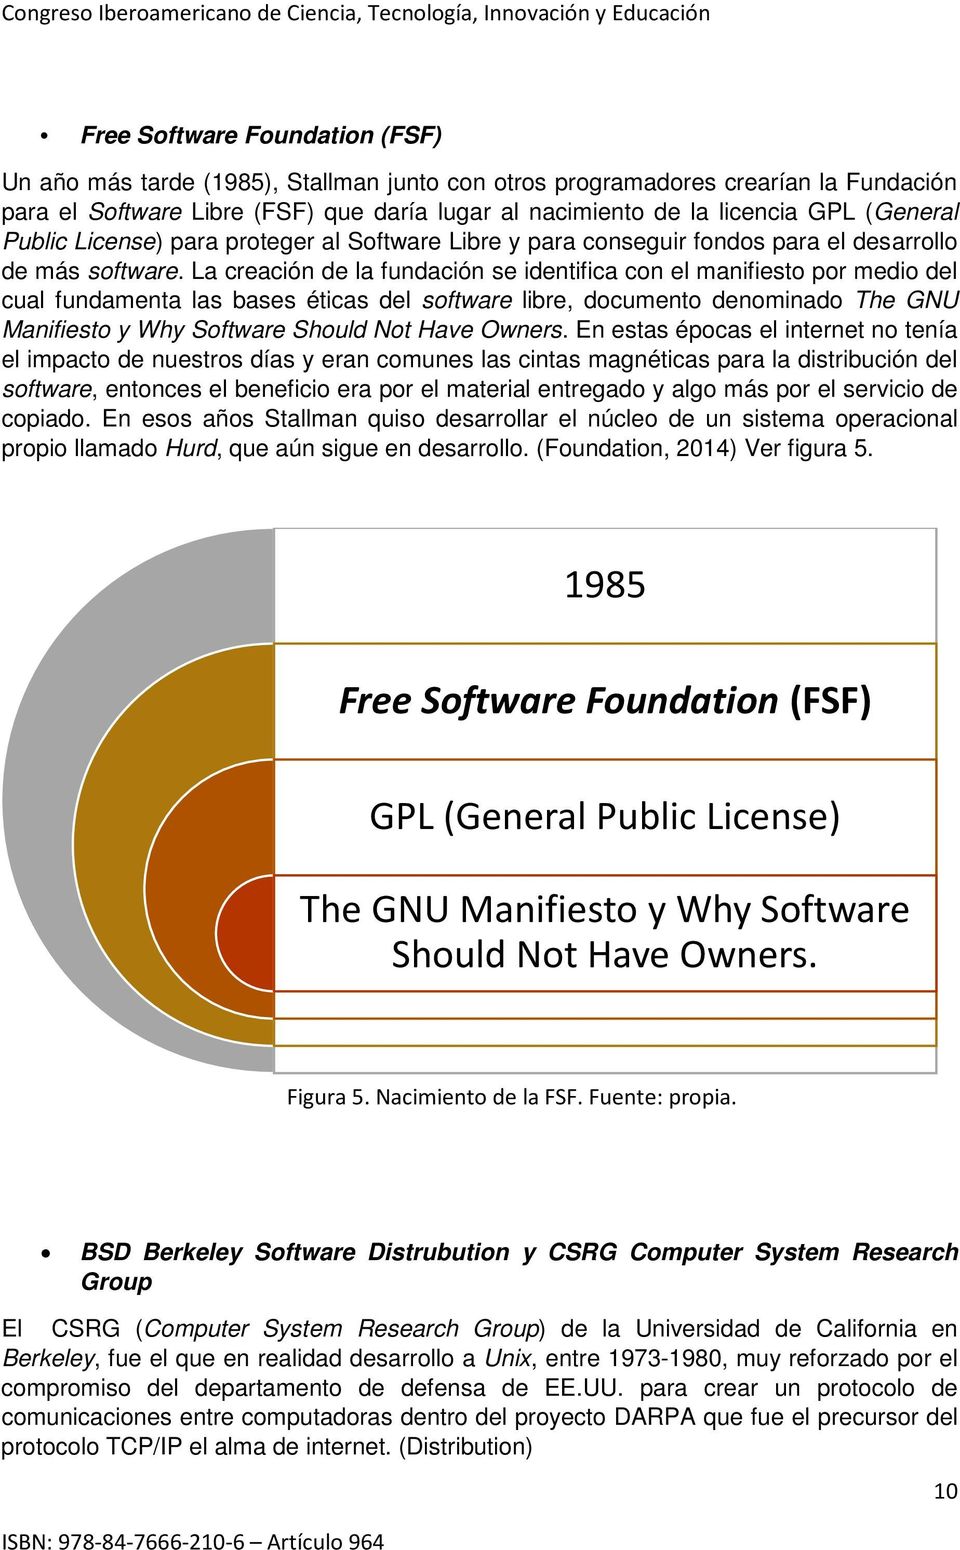 La creación de la fundación se identifica con el manifiesto por medio del cual fundamenta las bases éticas del software libre, documento denominado The GNU Manifiesto y Why Software Should Not Have